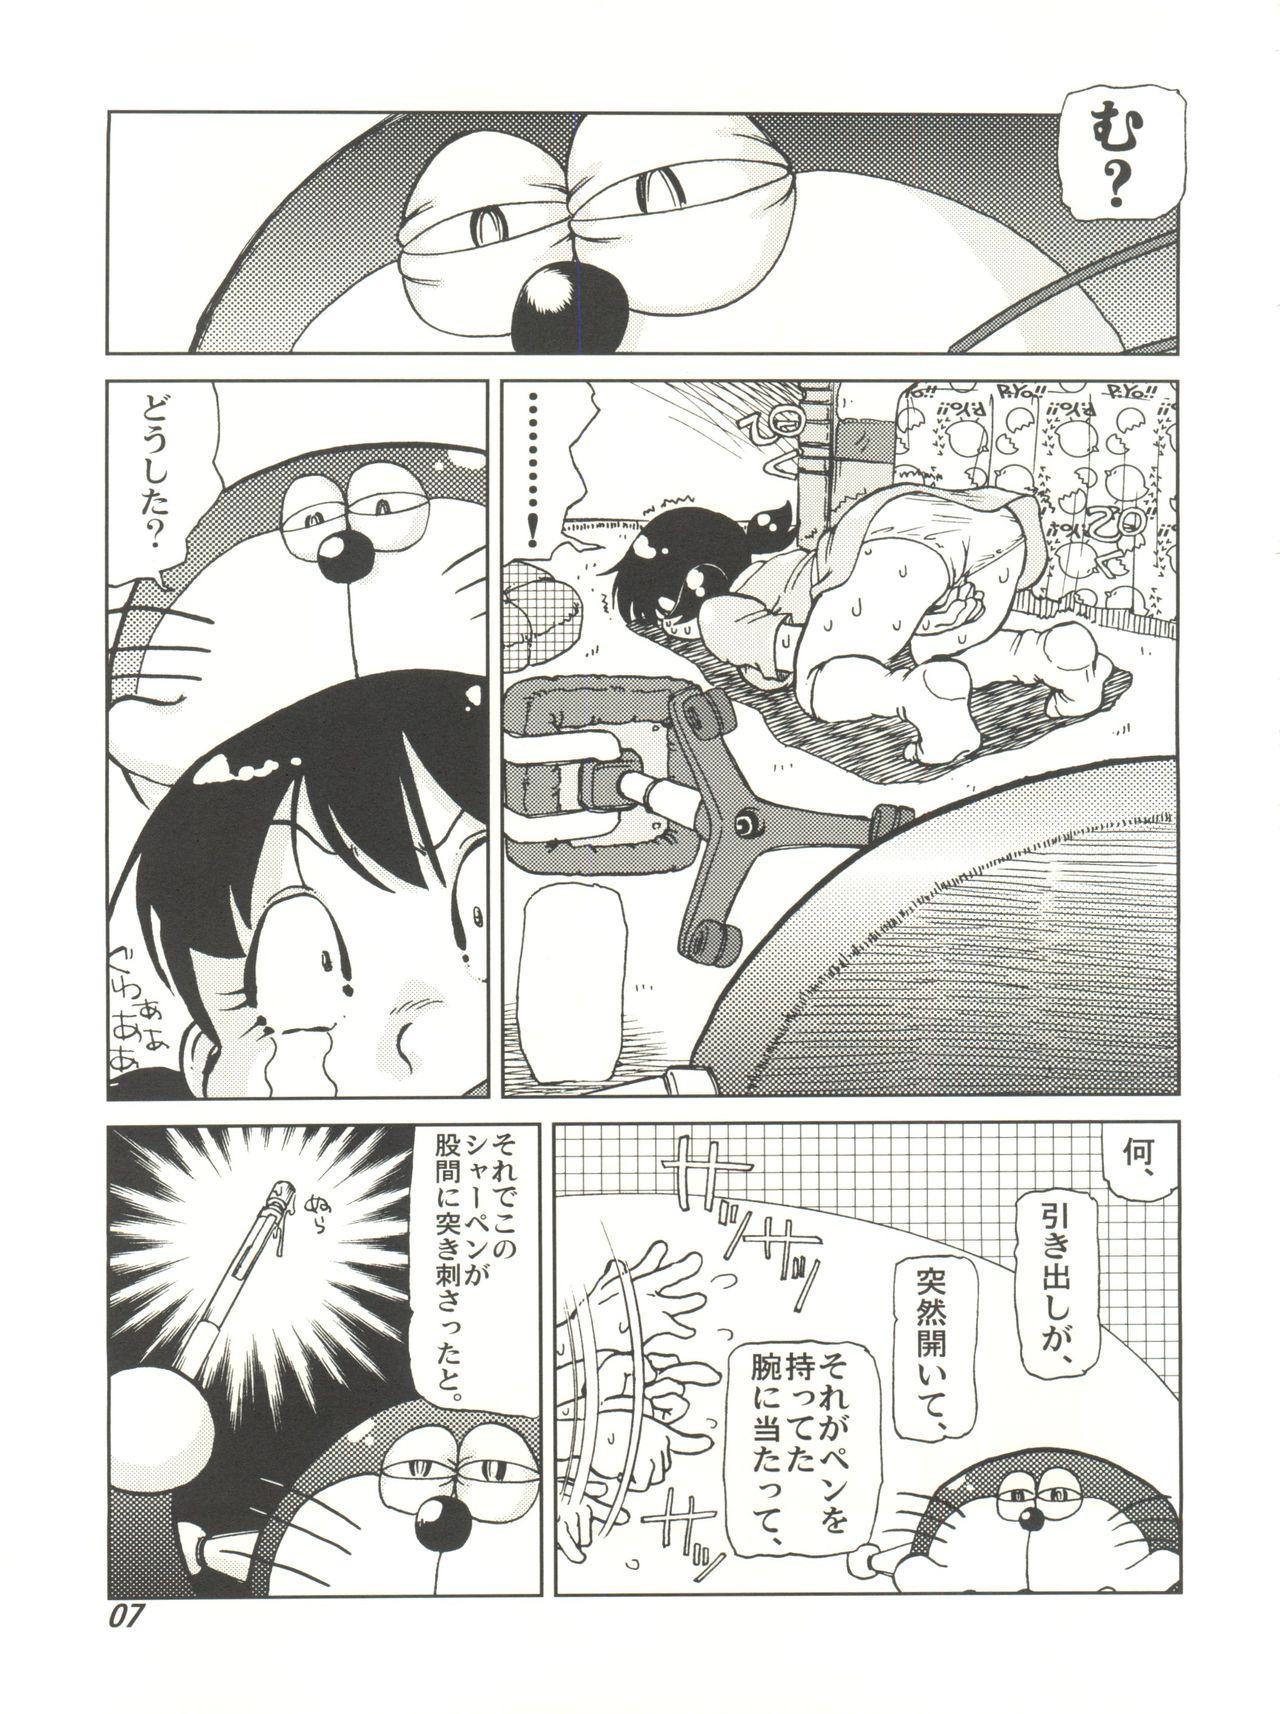 Oldvsyoung COUNTER DORA SHIZUKA & KAKUGARI GUARDIAN - Doraemon Maduro - Page 6